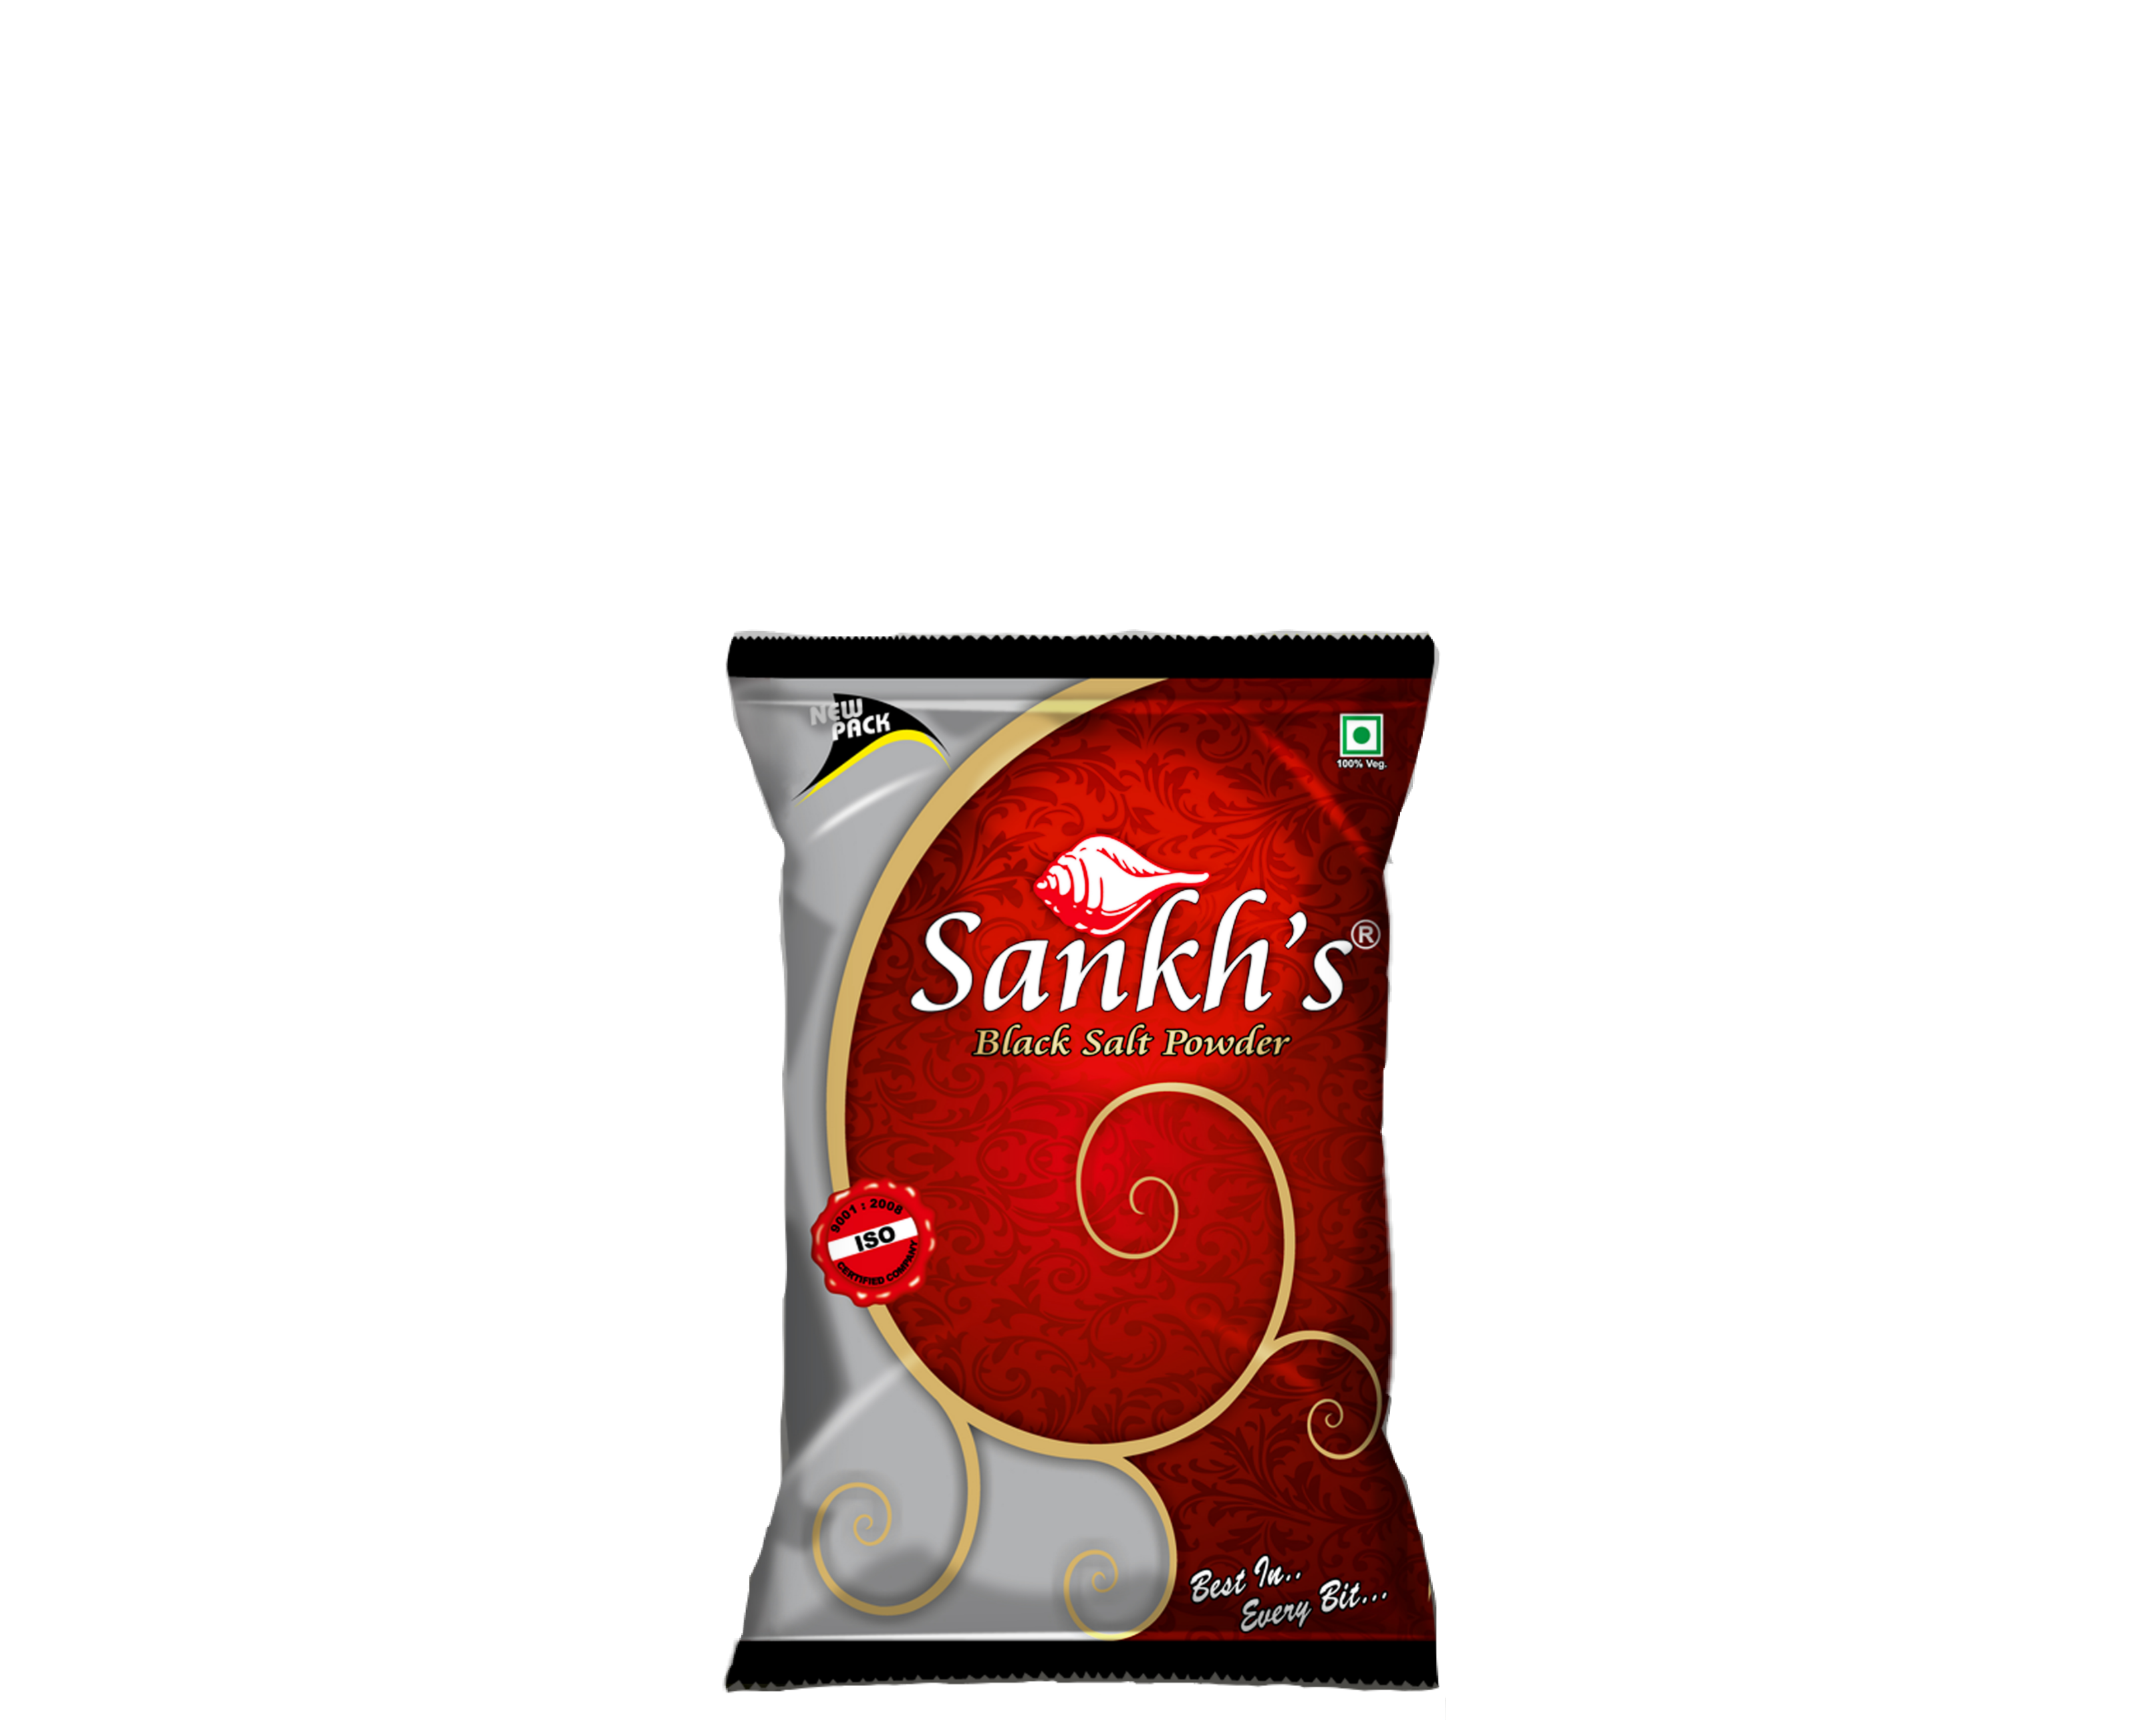 Regular Sankh Black Salt